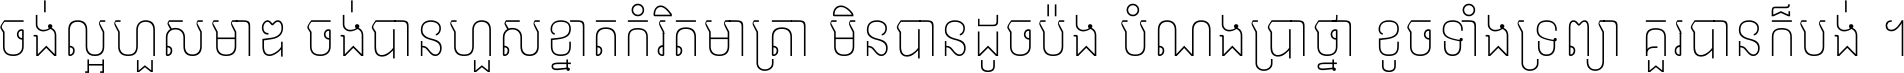 Noto Sans Khmer Condensed Thin